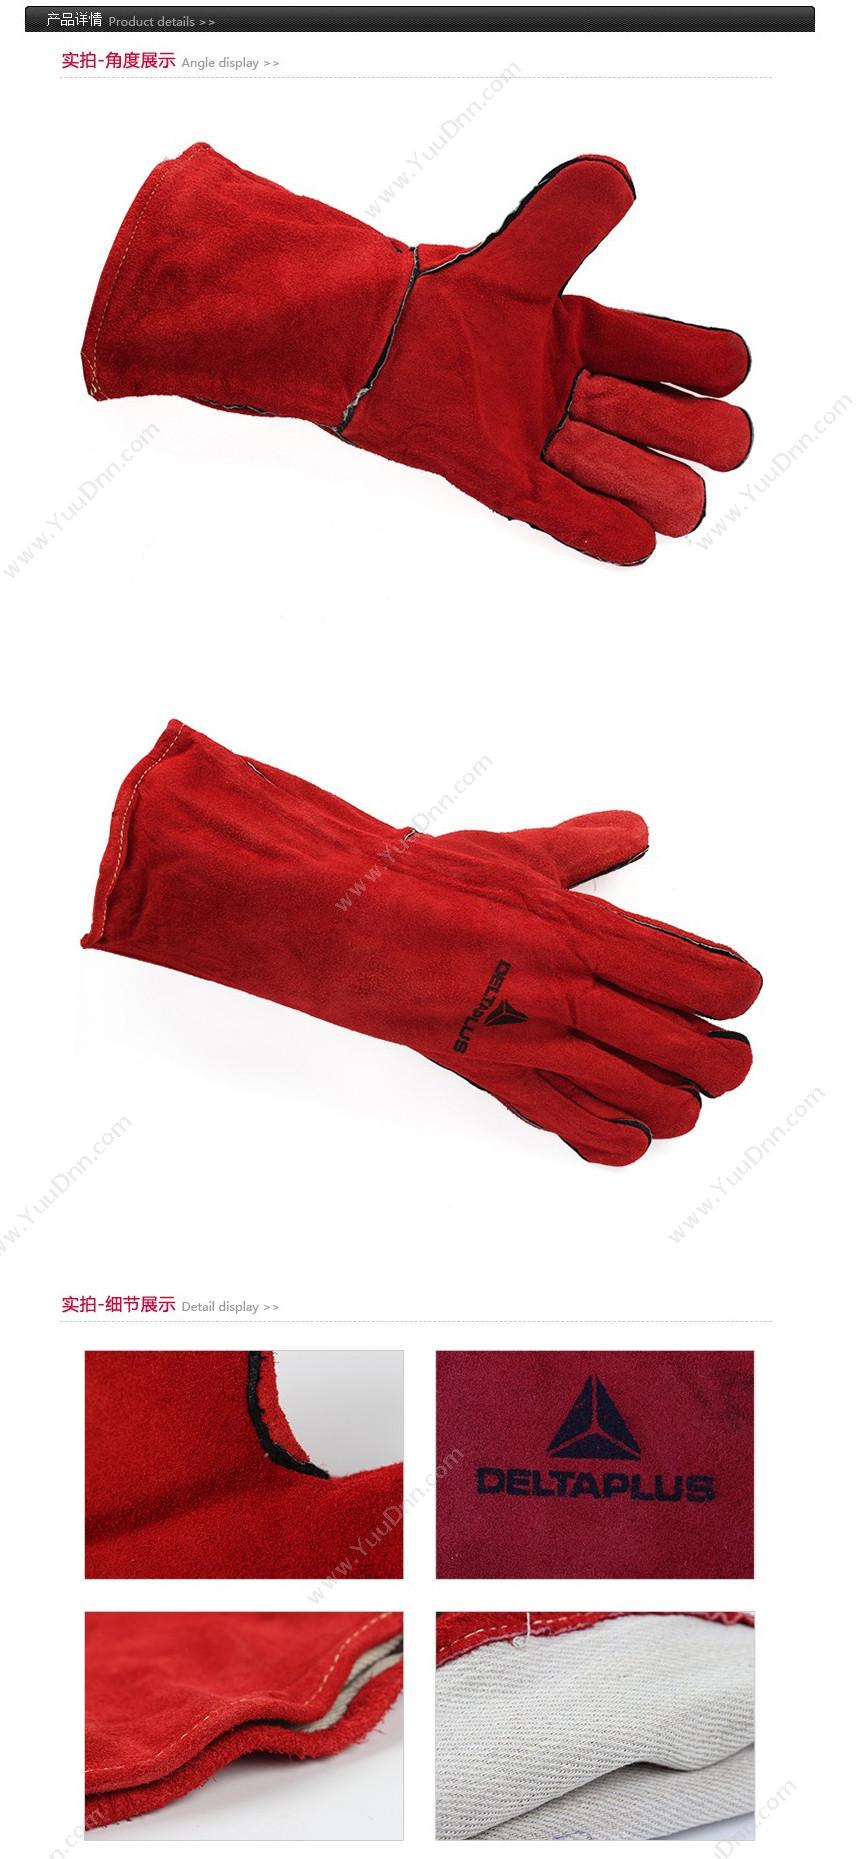 代尔塔 Delta 205615 凯夫拉焊工手套 CA615K/10 红色 12副/打 隔热手套